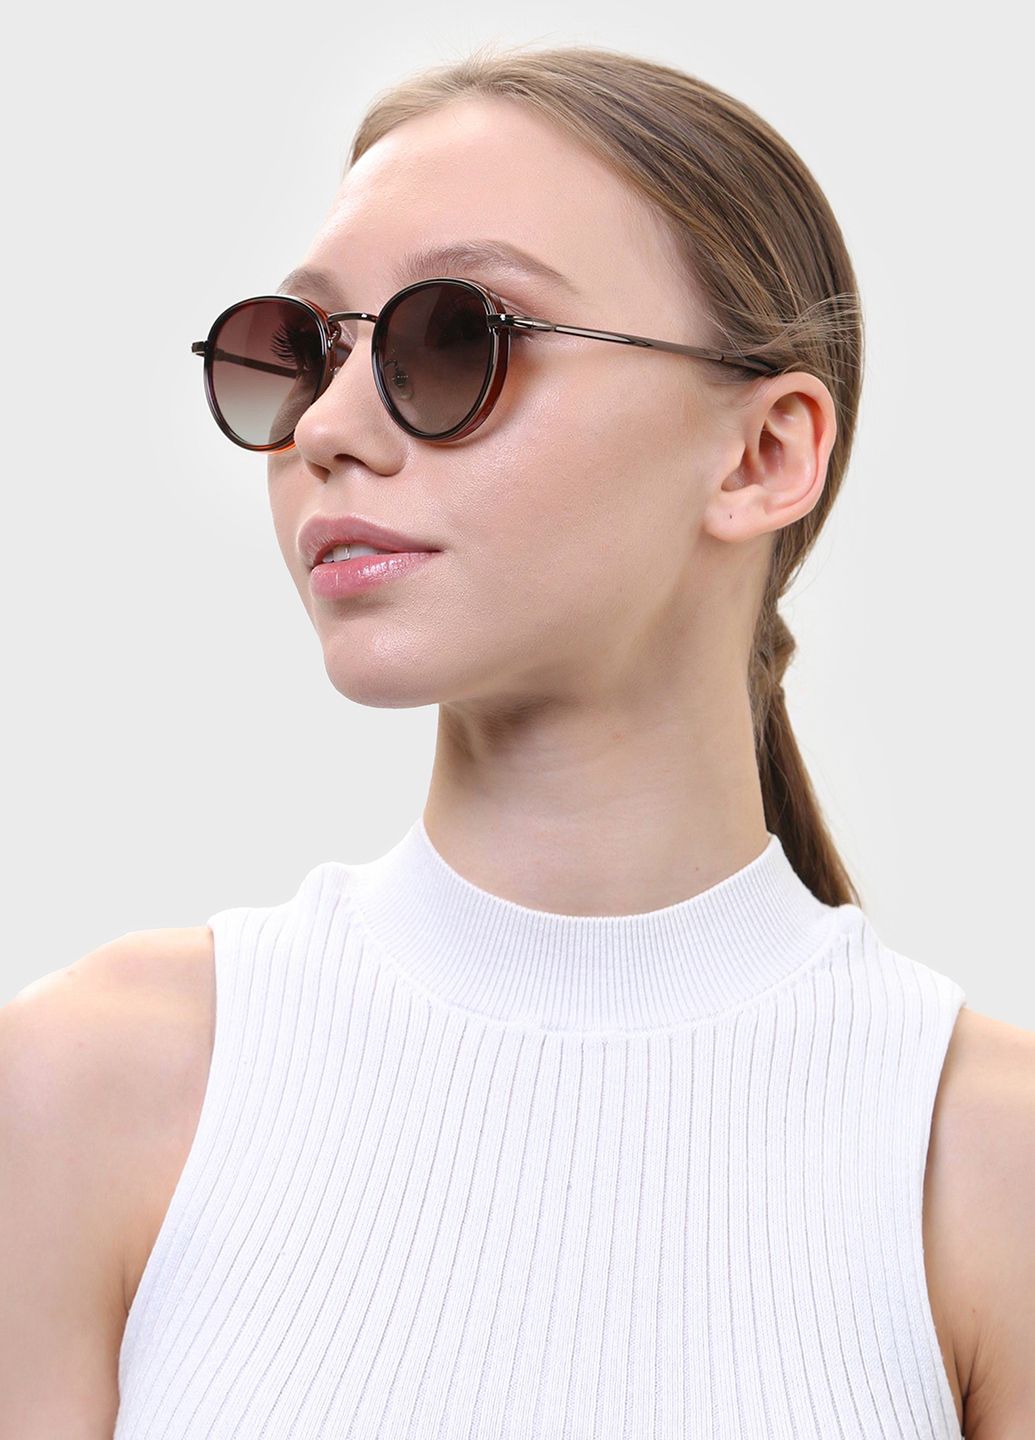 Купить Солнцезащитные очки c поляризацией HAVVS HV68042 170039 - Коричневый в интернет-магазине